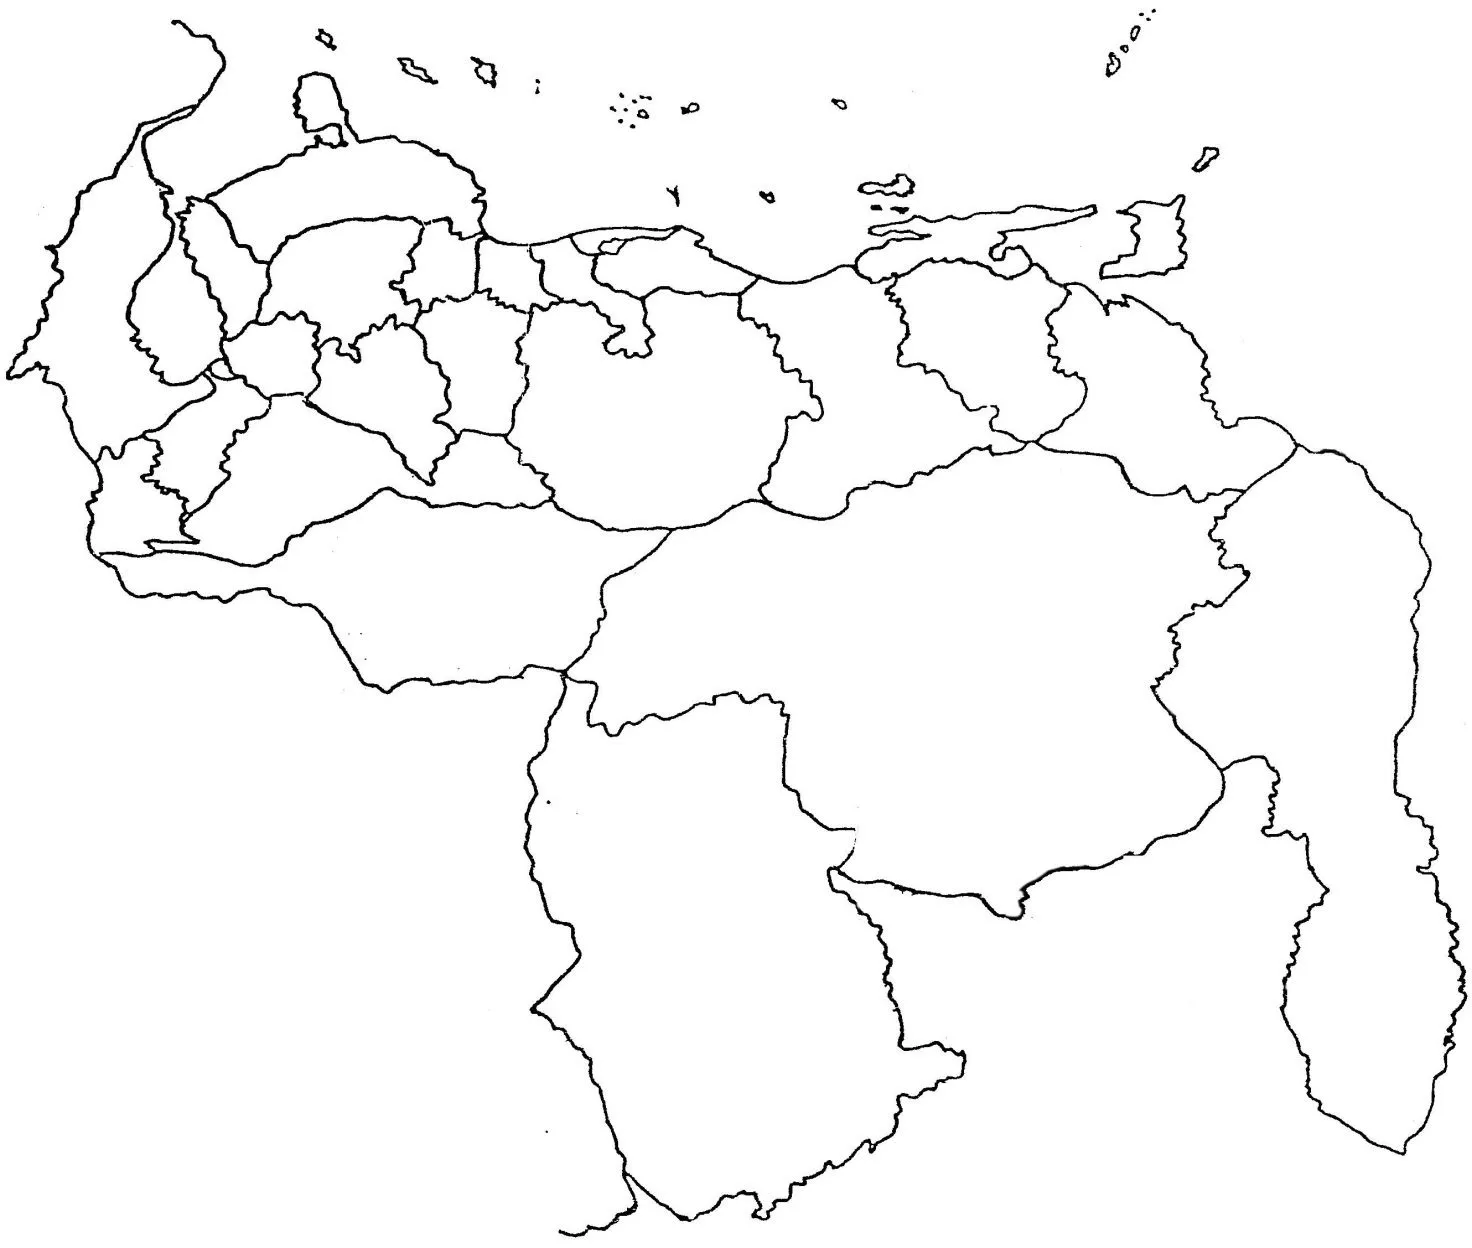 Croquis del mapa de venezuela para colorear - Imagui